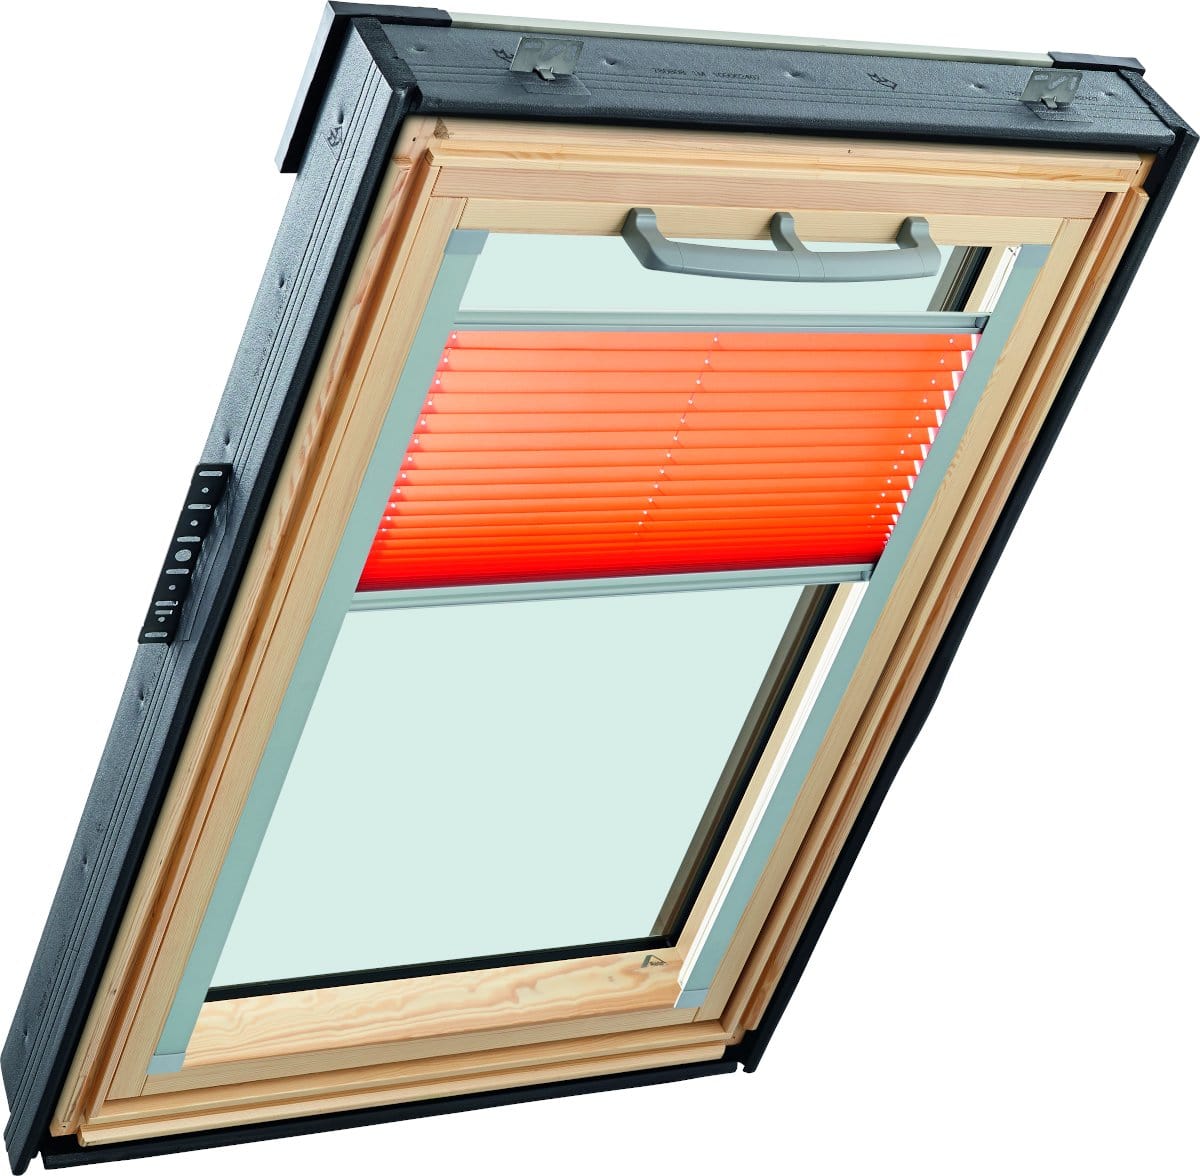 Окно мансардное деревянное с верхней ручкой RotoQ Q42C H200. 1 камерный стеклопакет. Двойной ThermoBlock WD.